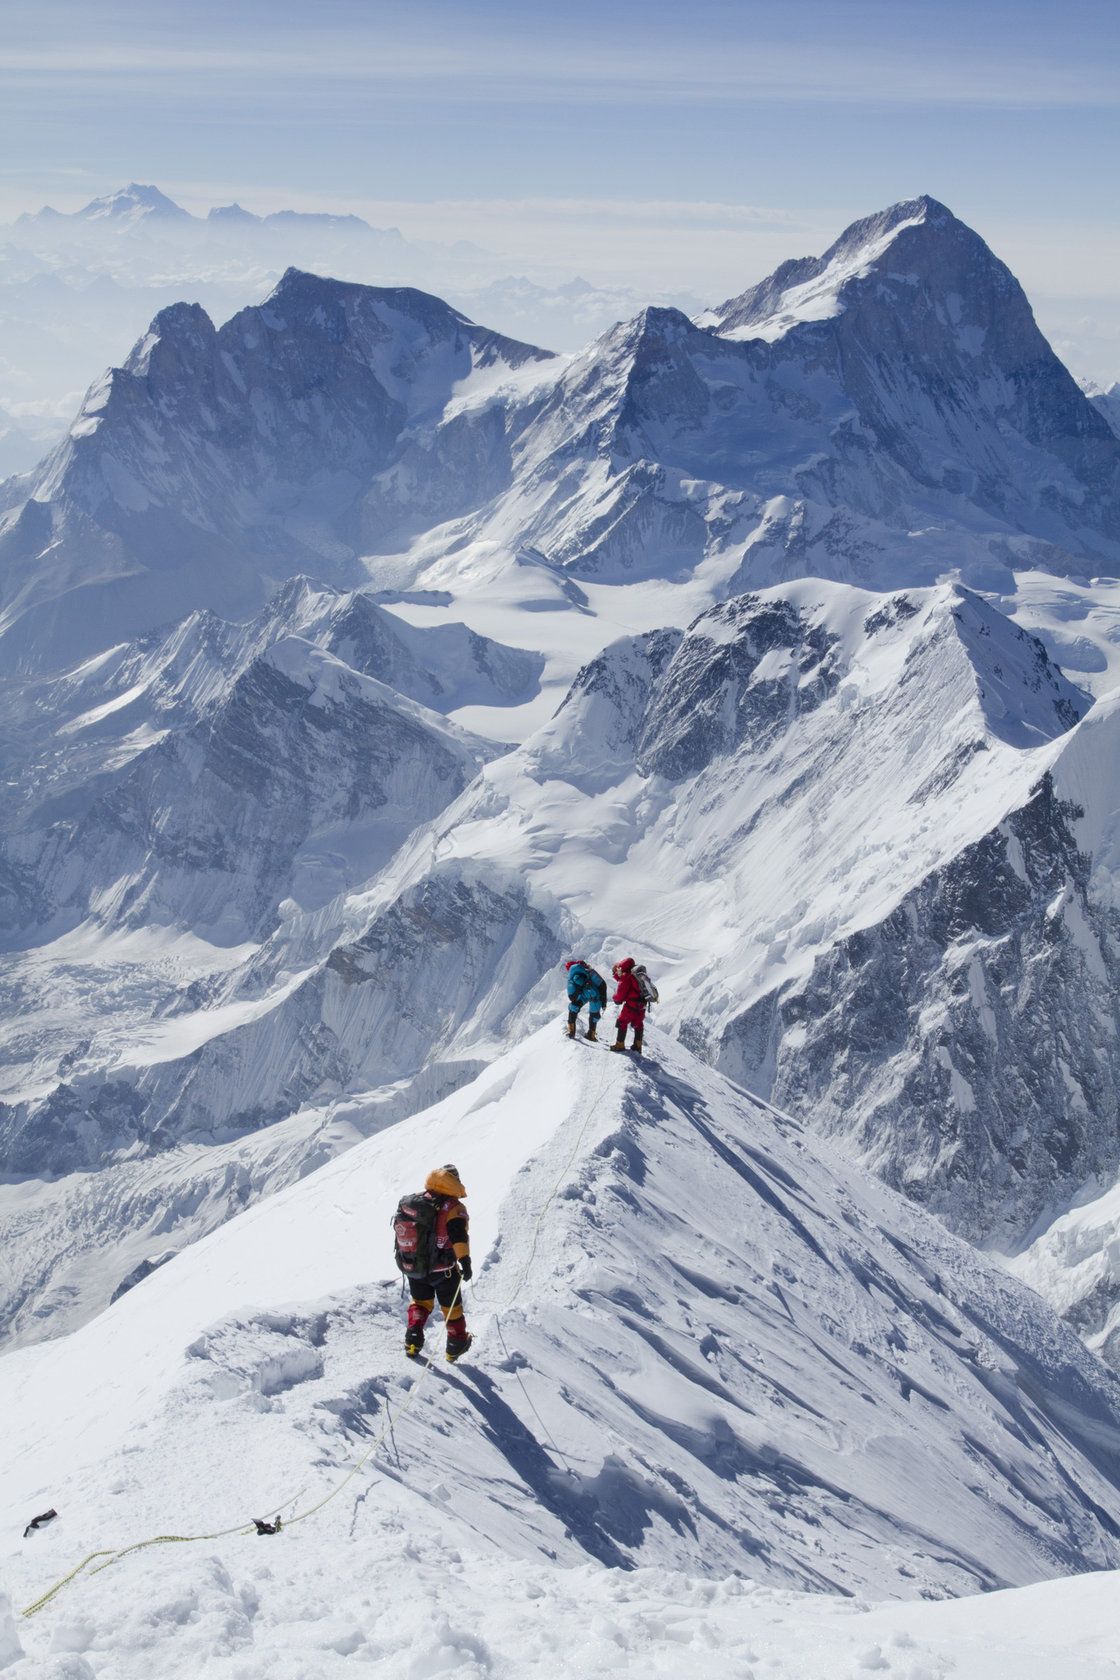 Kinh nghiệm chinh phục đỉnh Everest​ bạn cần biết gì?